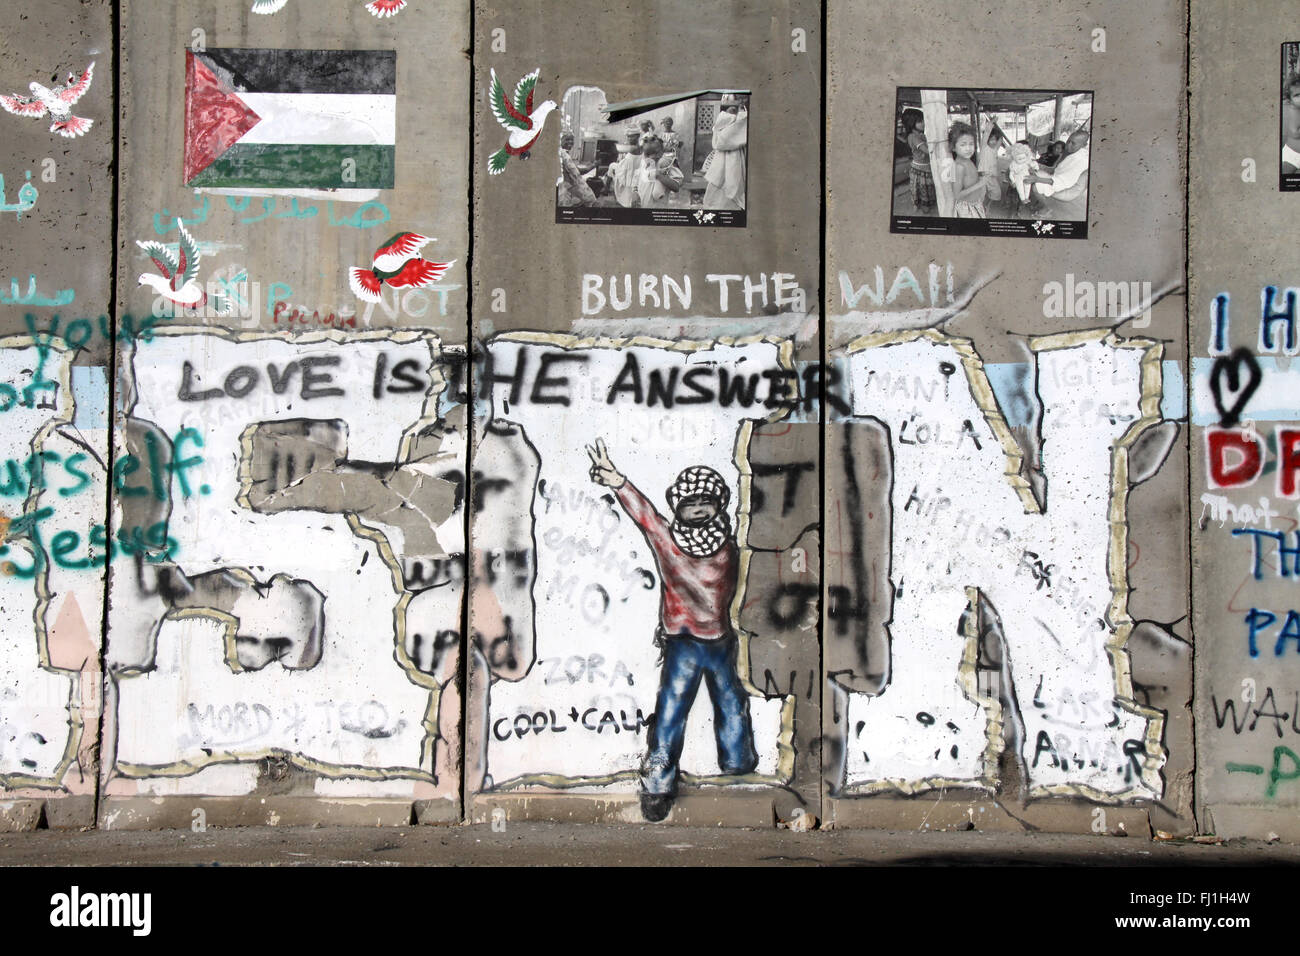 Palästina - Bethlehem Checkpoint und Besetzung Wand - palästinensische Gebiete Stockfoto